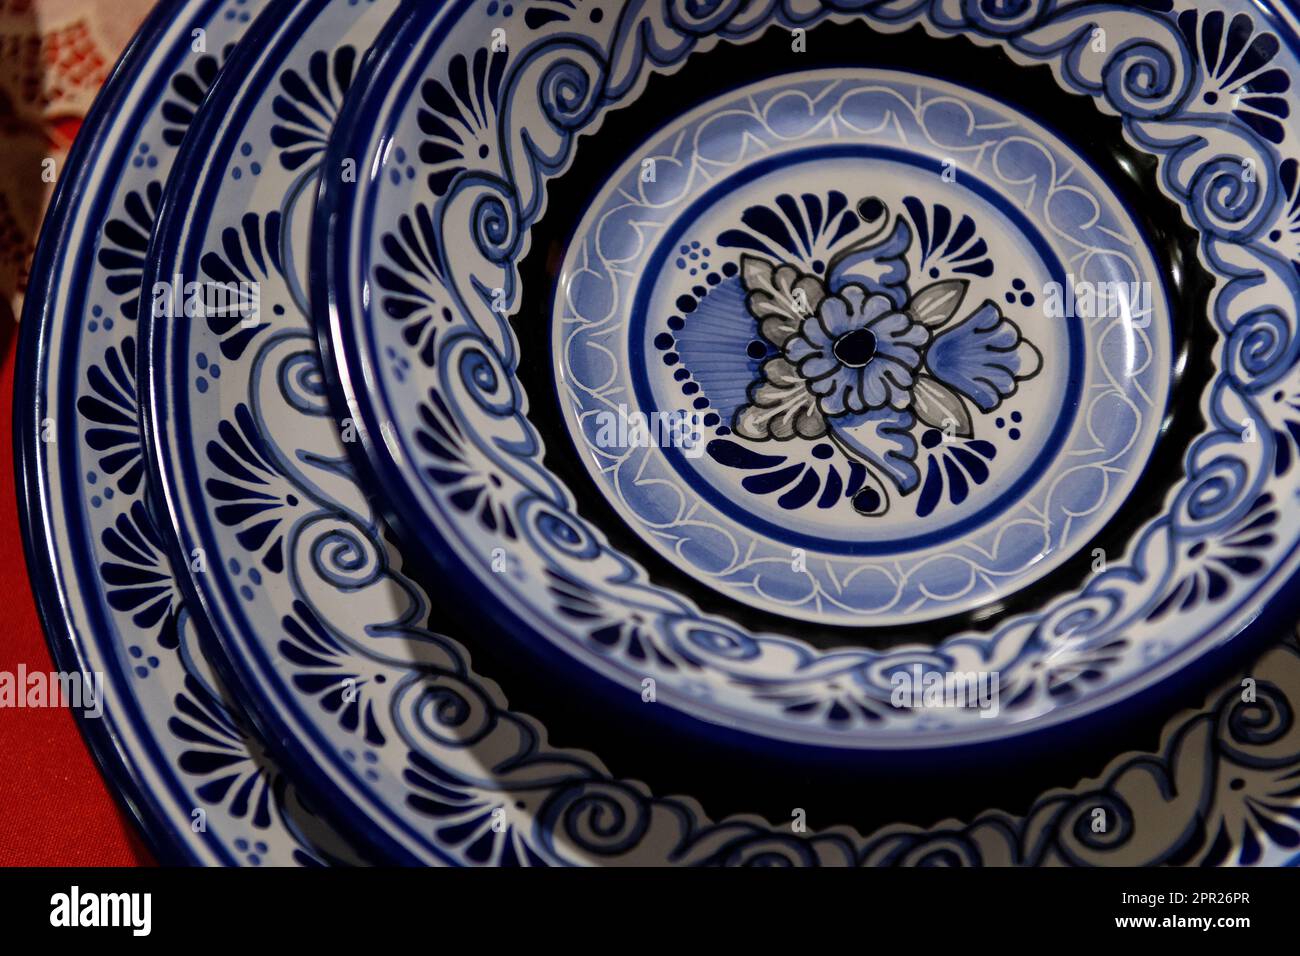 Ceramic food plates of talavera pottery style, Puebla, Mexico. Stock Photo